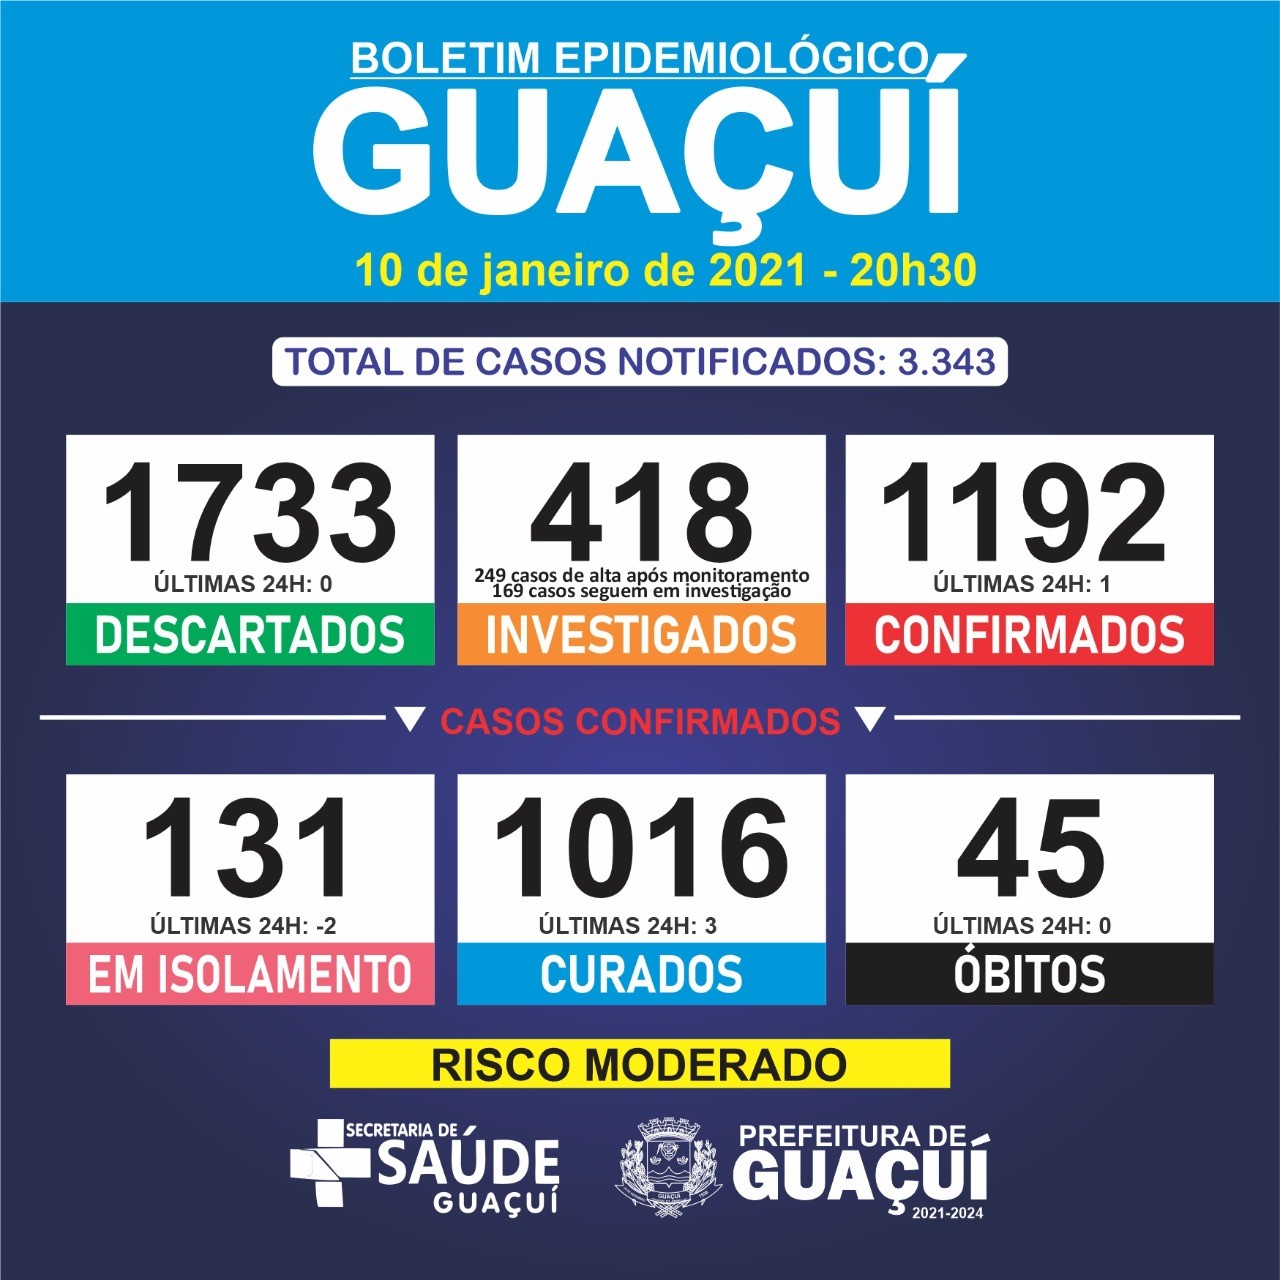 Guaçuí registra mais 1 caso de Covid-19 e 3 curados neste domingo